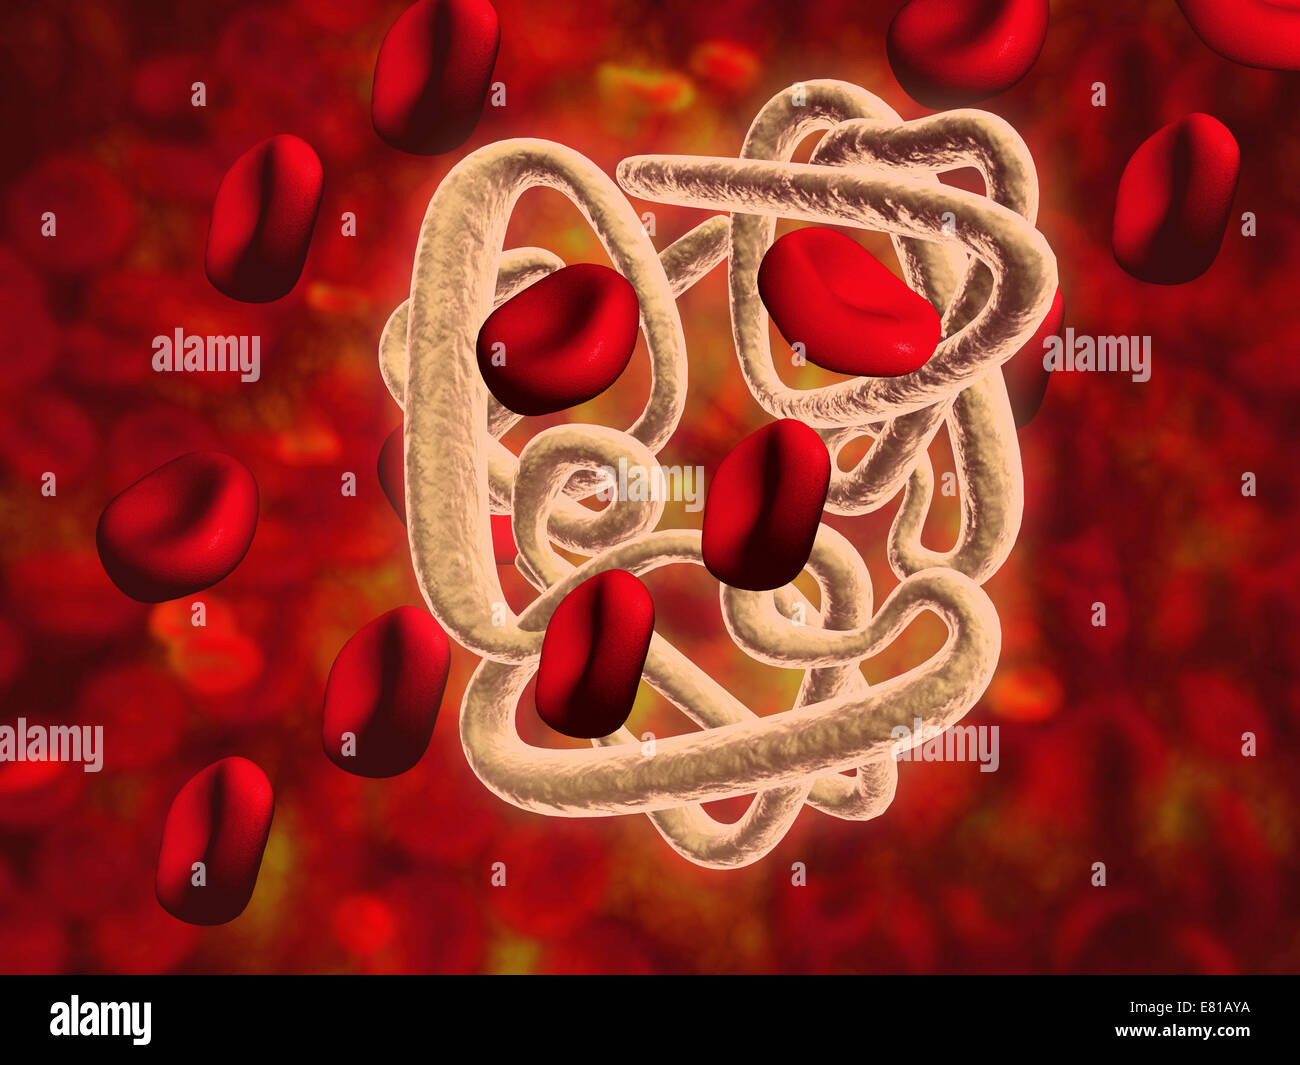 Immagine concettuale di emoglobina e cellule di sangue rosse. L'emoglobina è una proteina responsabile per il trasporto di ossigeno nel sangue rosso Foto Stock